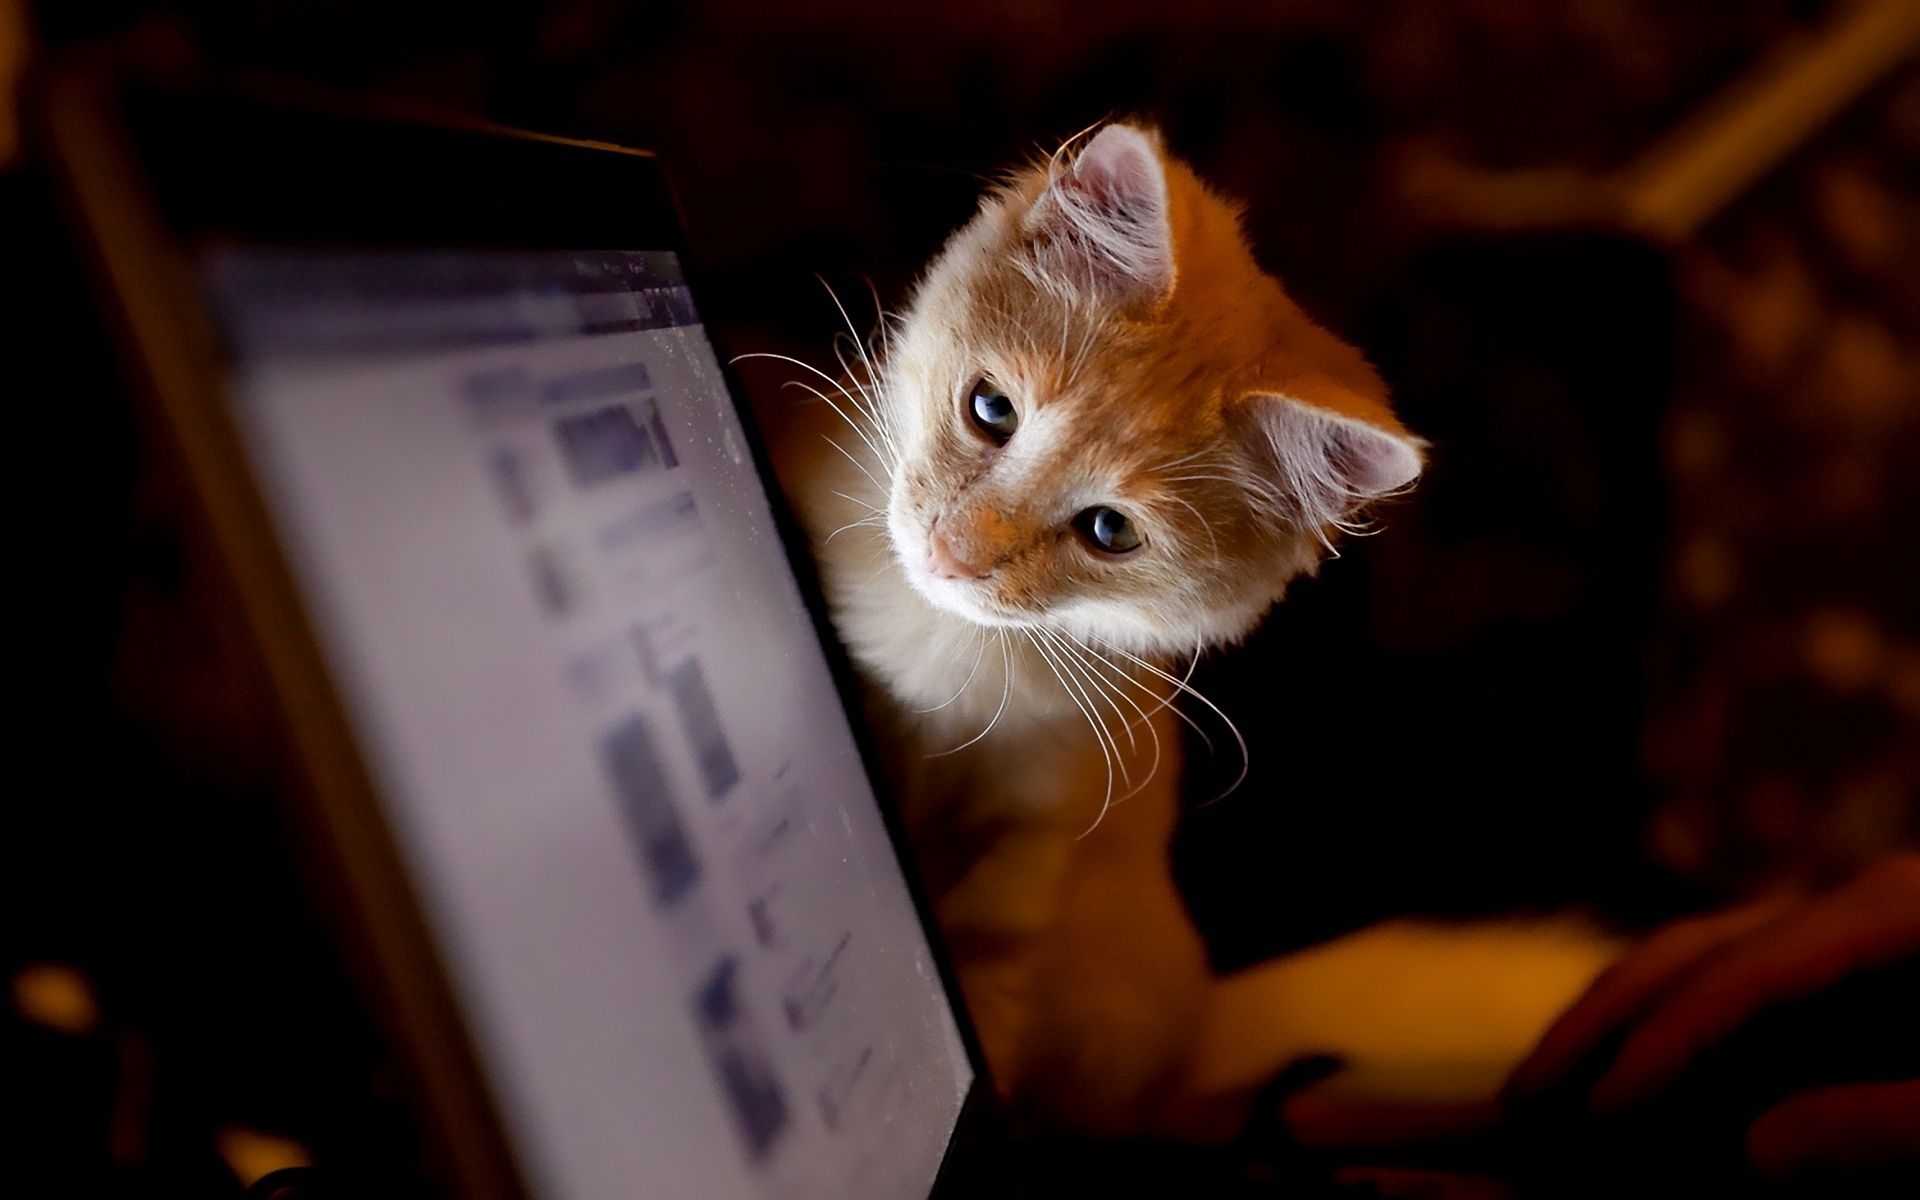 Kitten animals, kitty, curiosity, computer Free Stock Photos